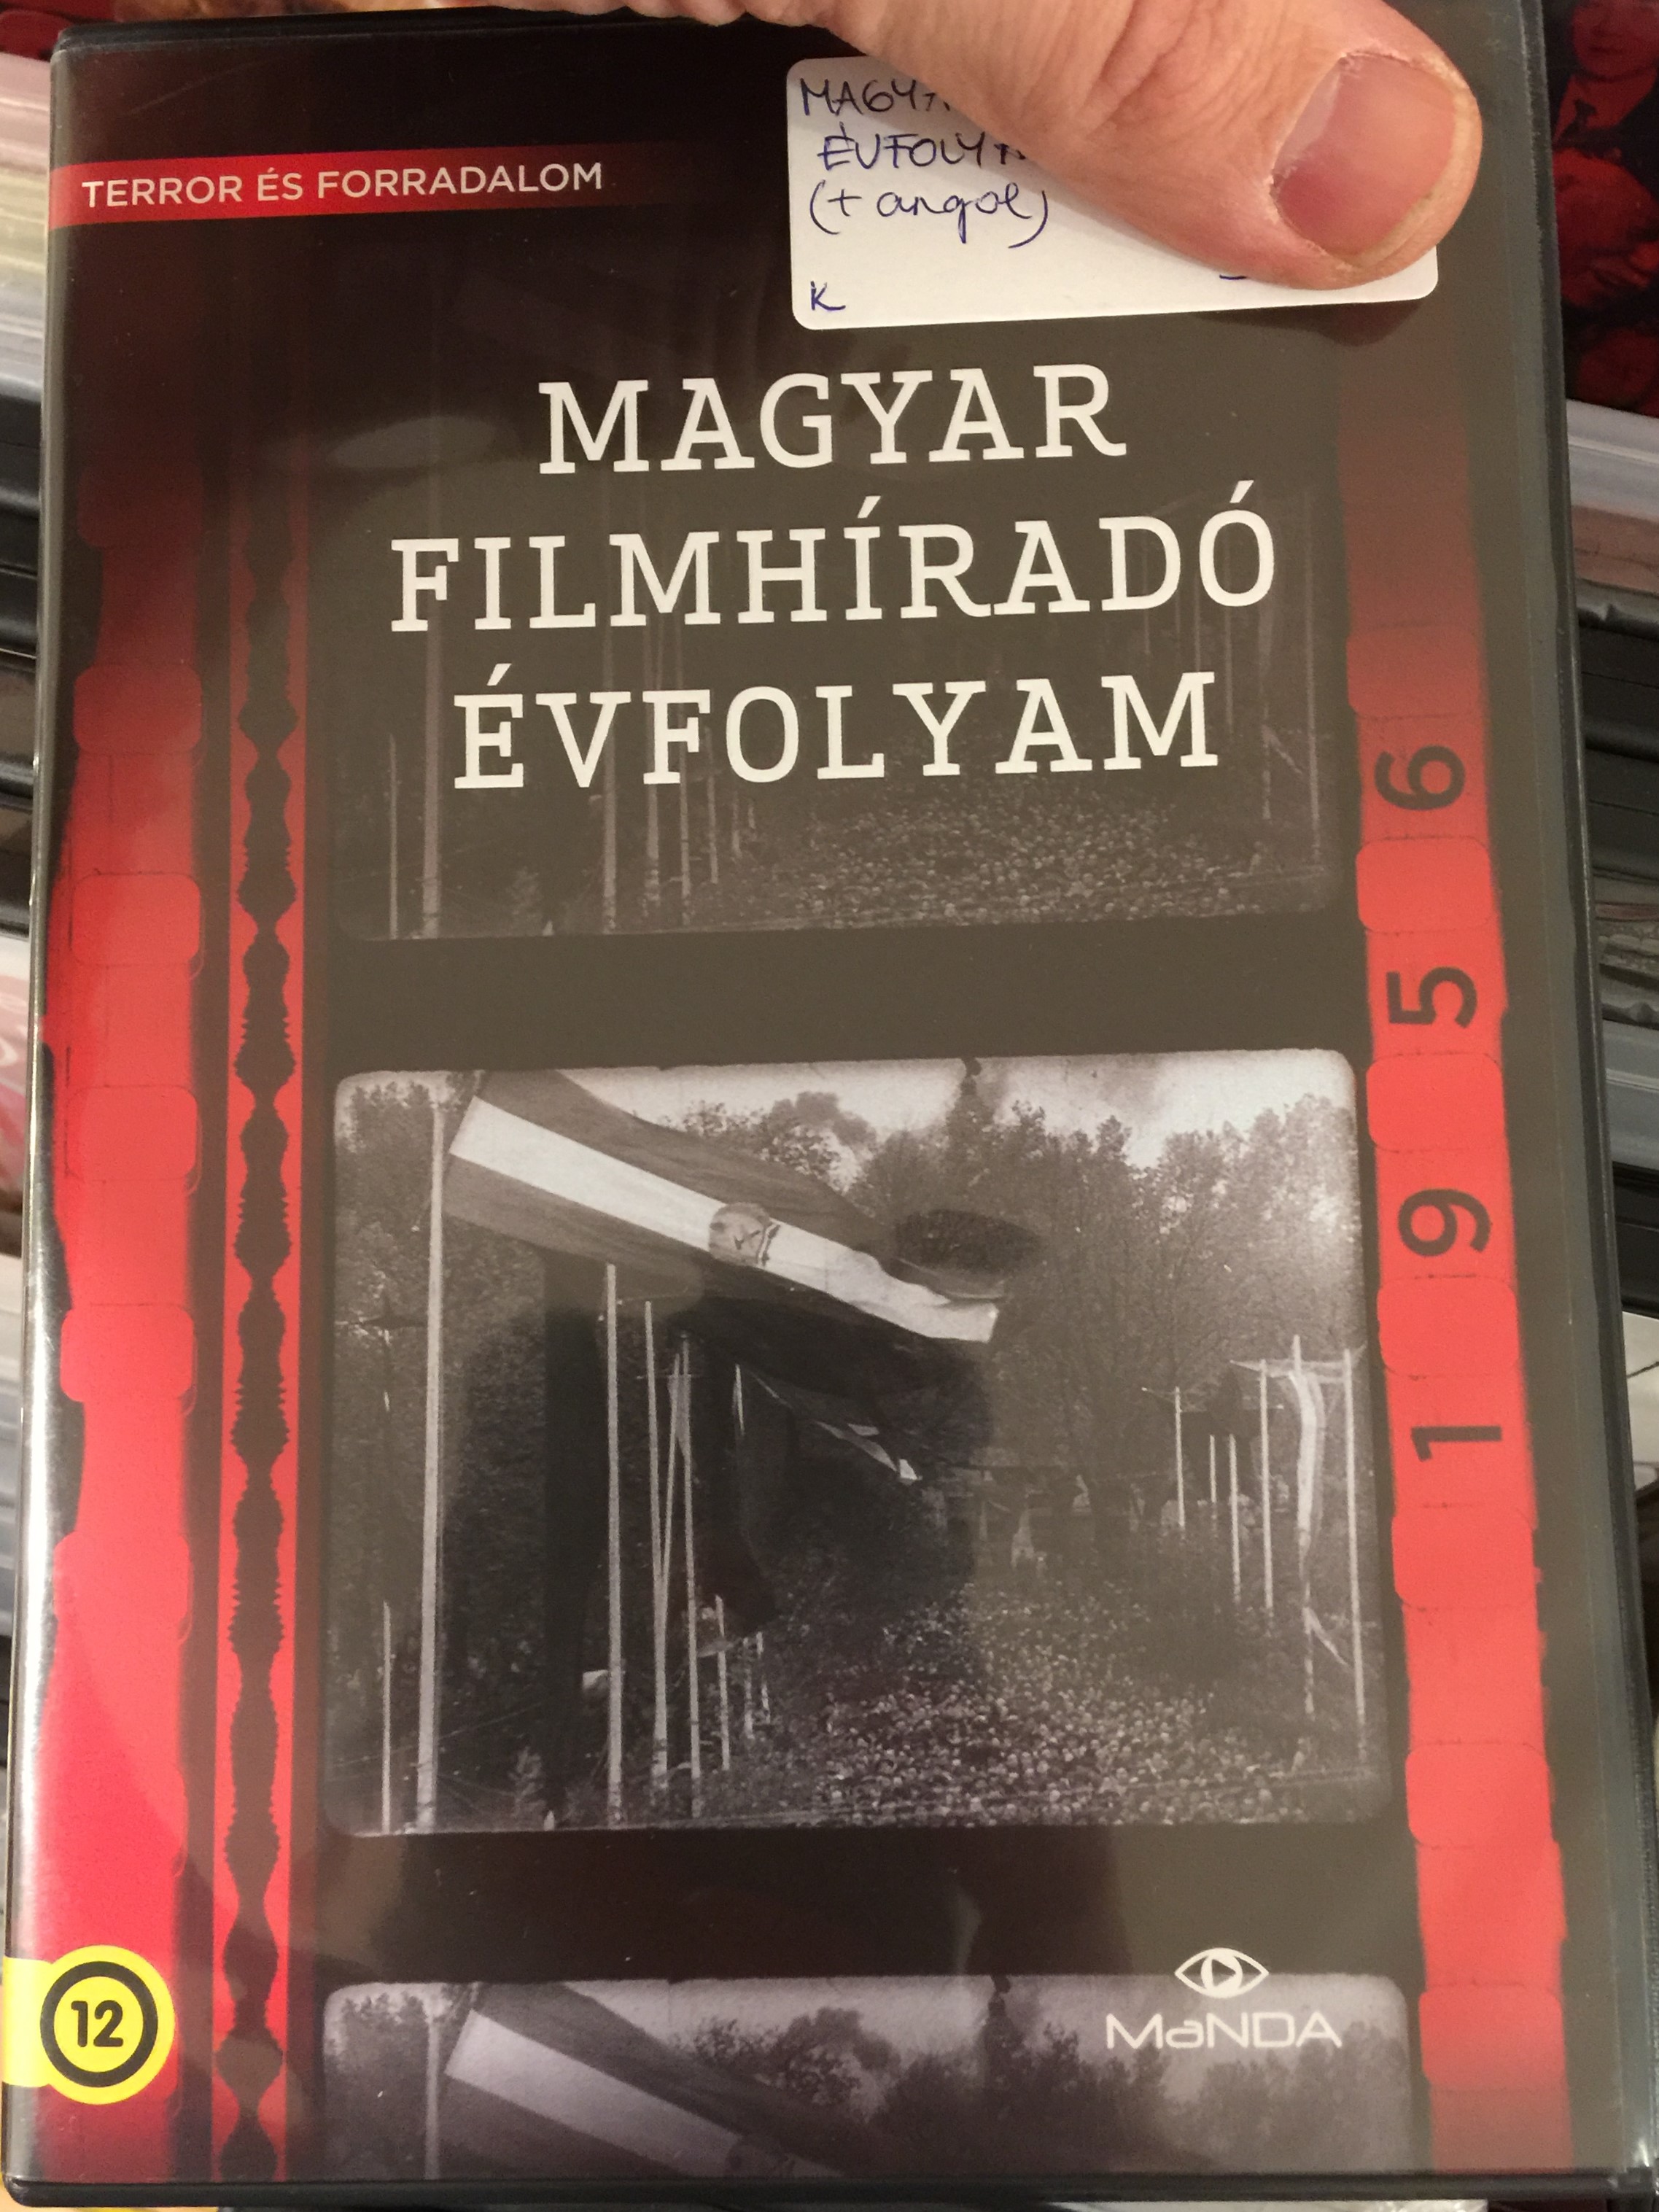 Magyar Filmíradó évfolyam - 1956 DVD Terror és forradalom 1.JPG